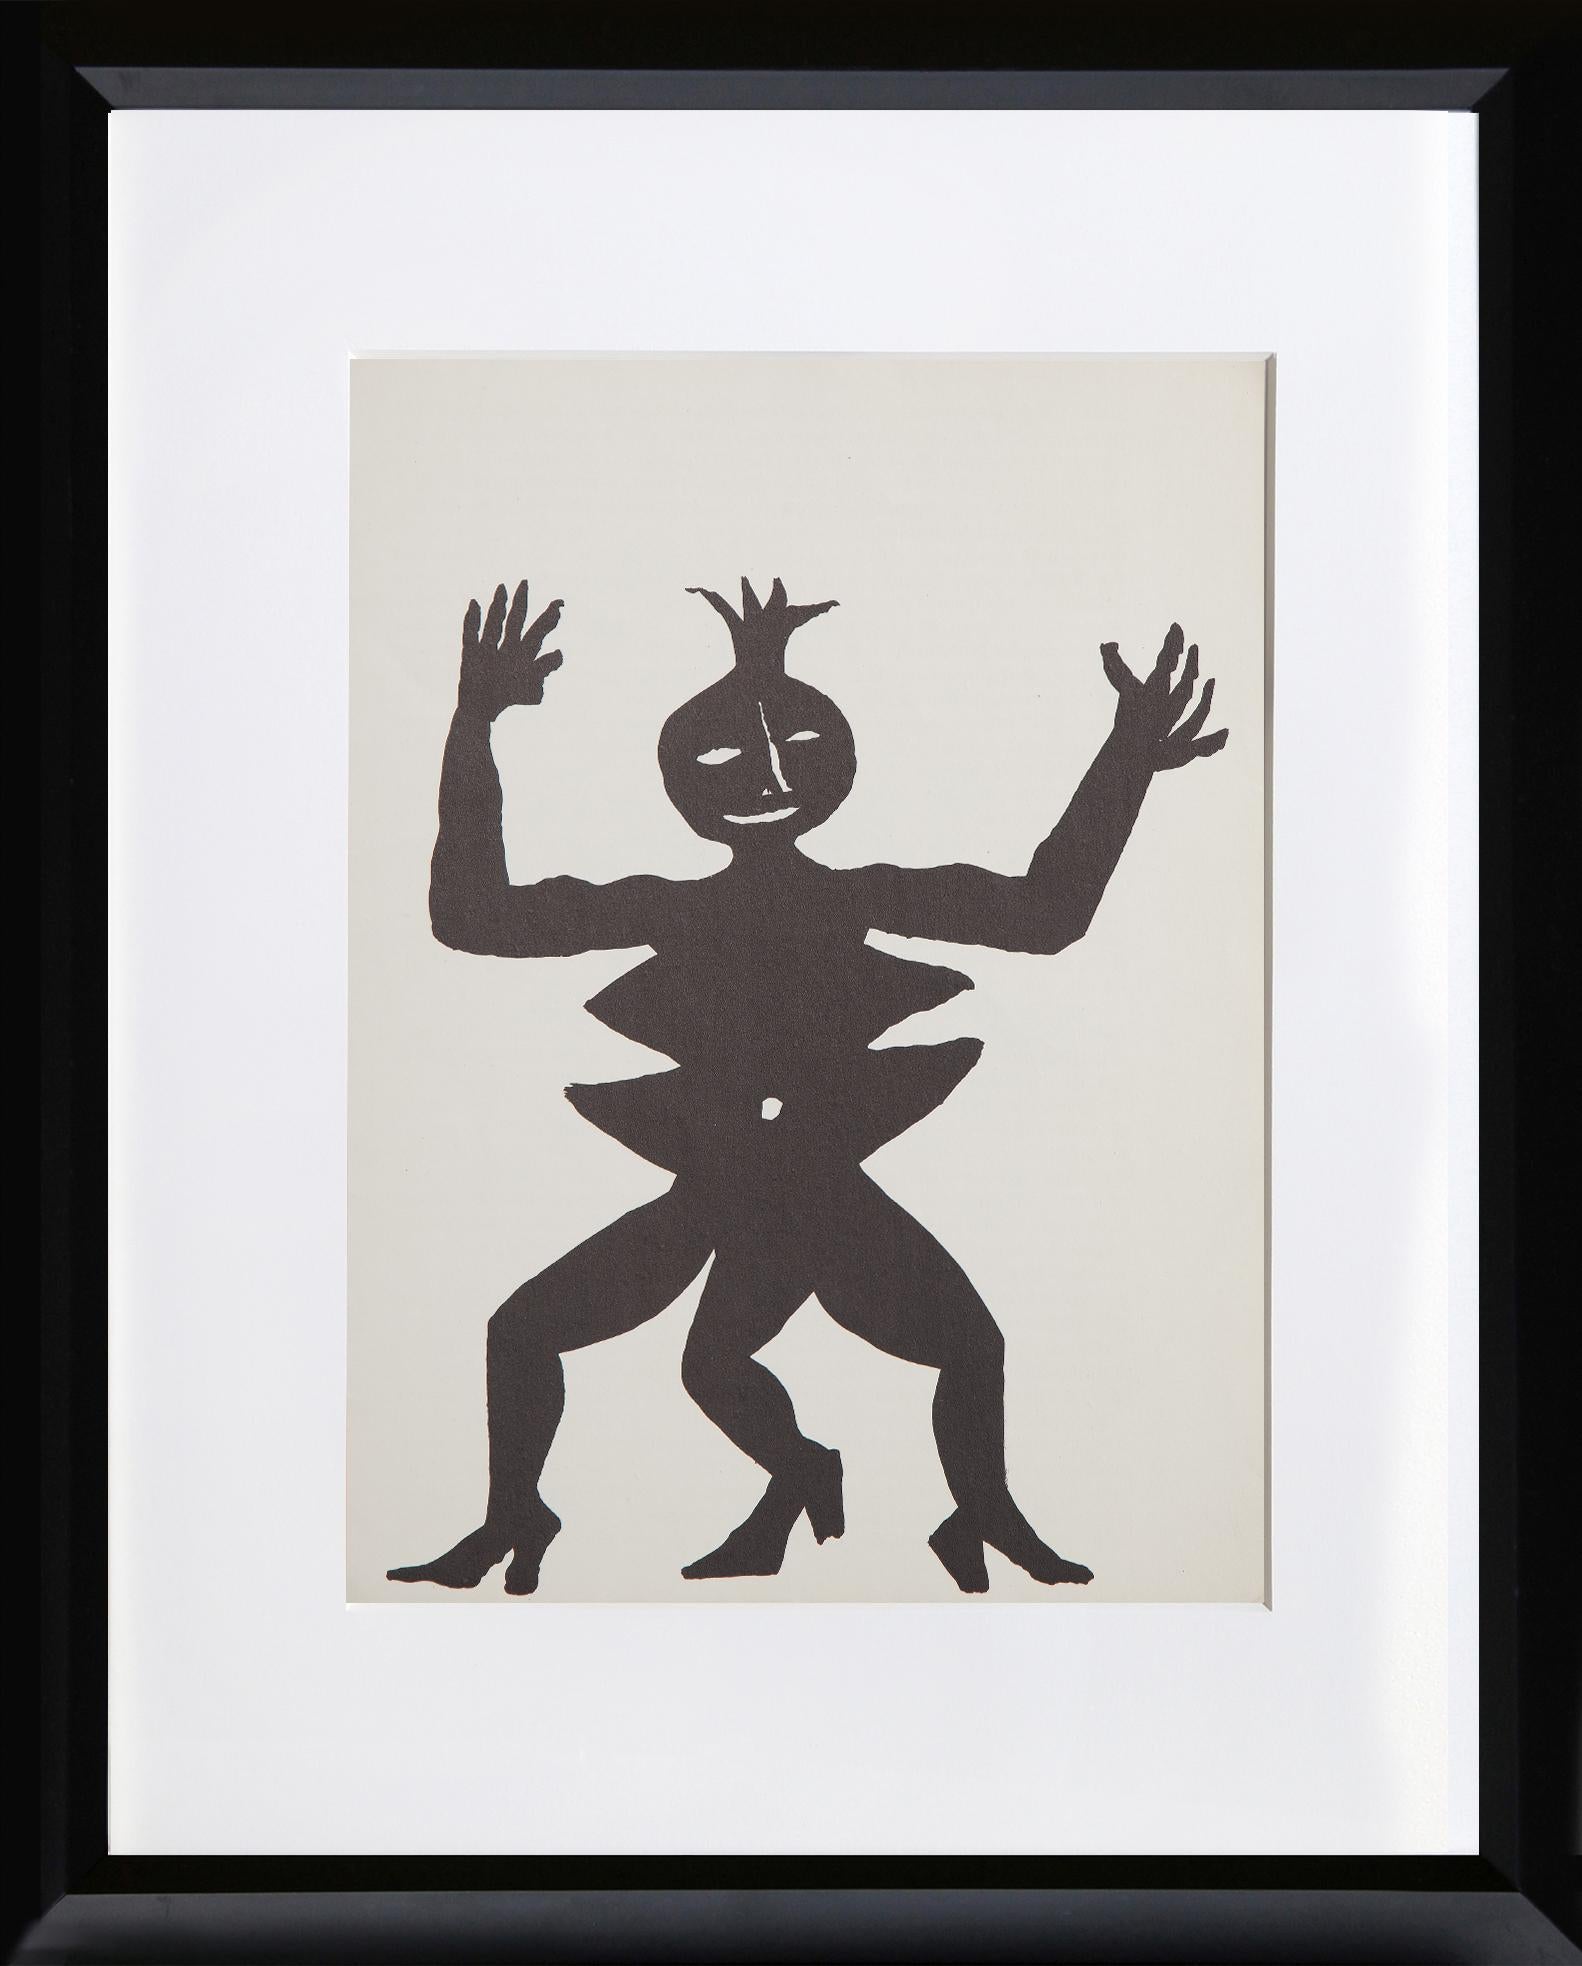 Acrobate en talons d'après Derriere Le Miroir d'Alexander Calder, Américain (1898-1976)
Date : 1975
Lithographie
Taille : 15 x 11 in. (38.1 x 27.94 cm)
Imprimeur : Maeght, Paris
Éditeur : Maeght Editeur, Paris